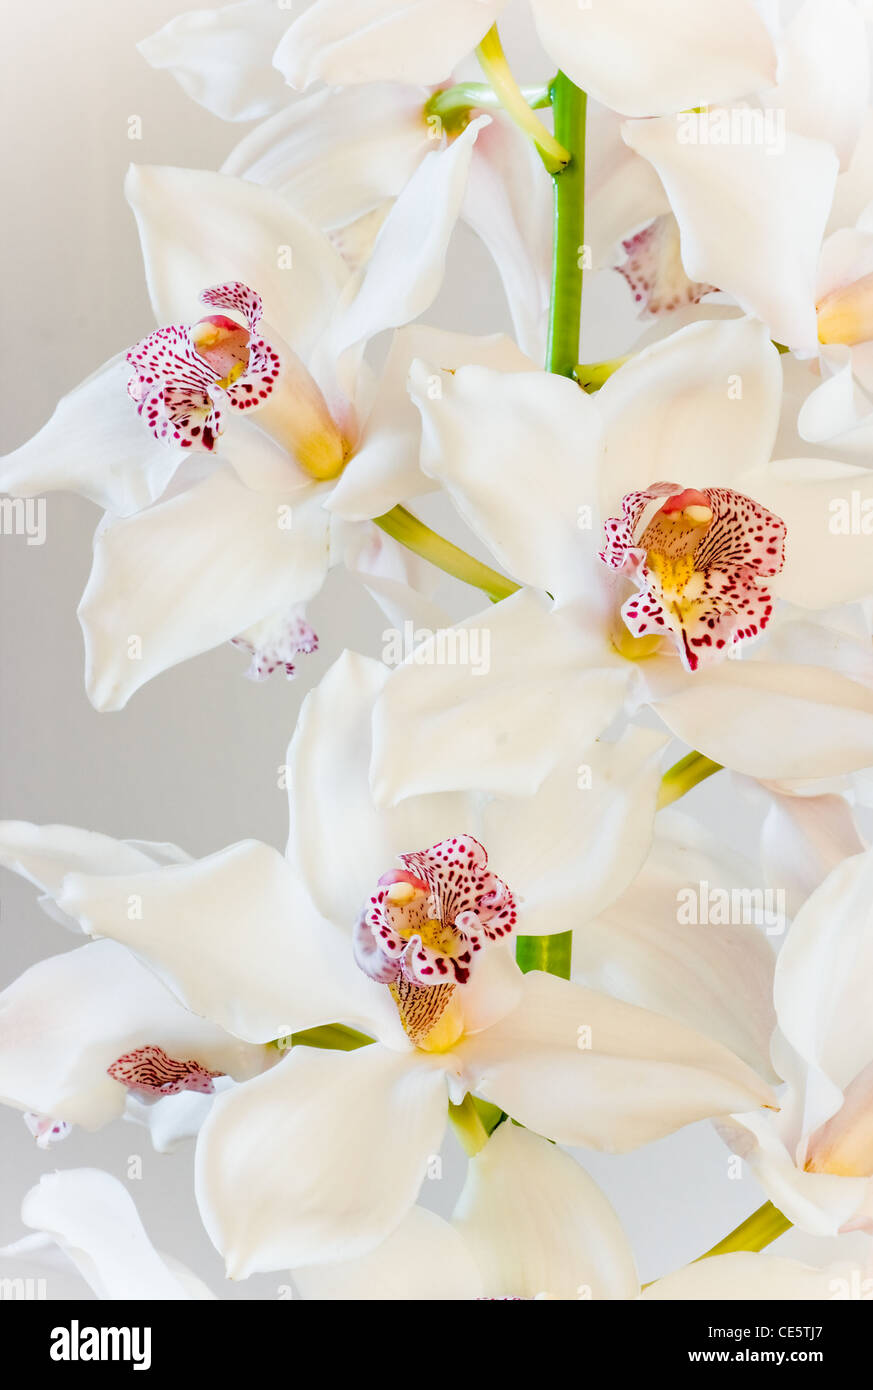 Cymbidium bianco o barca fiori di orchidea in vista ravvicinata - immagine verticale Foto Stock